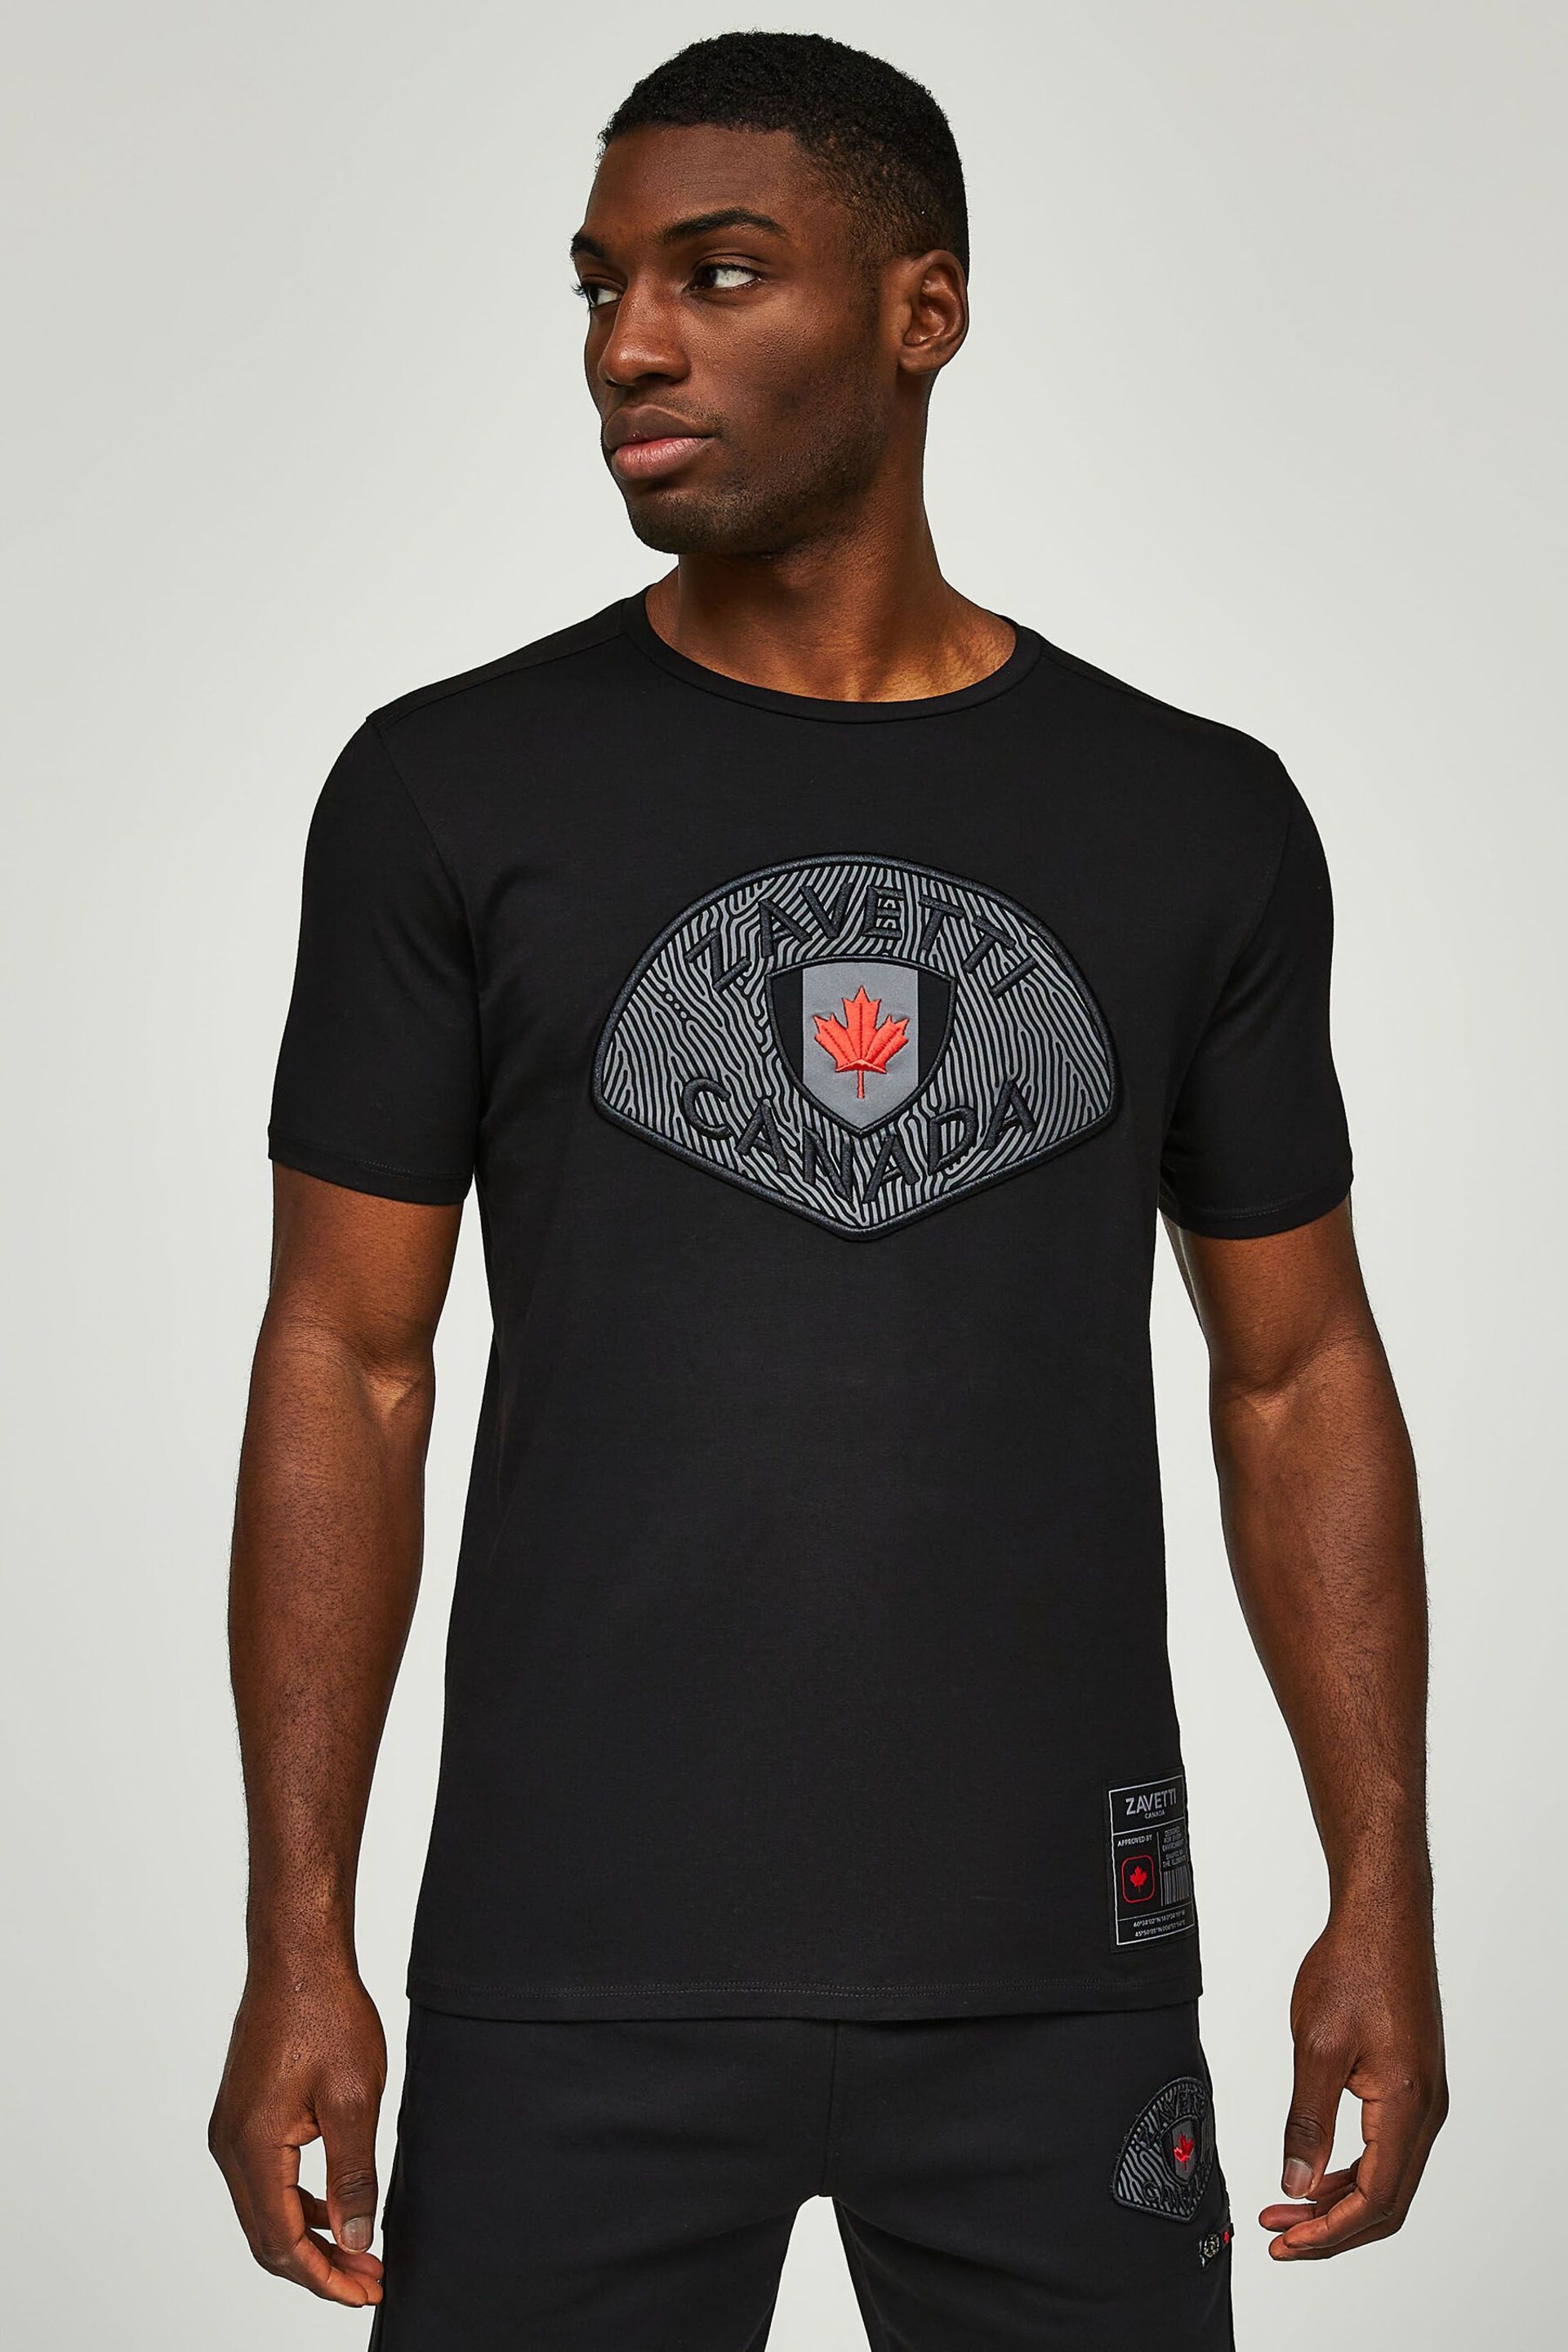 Zavetti Canada Telluccio 2 Black T-Shirt - Image 4 of 5